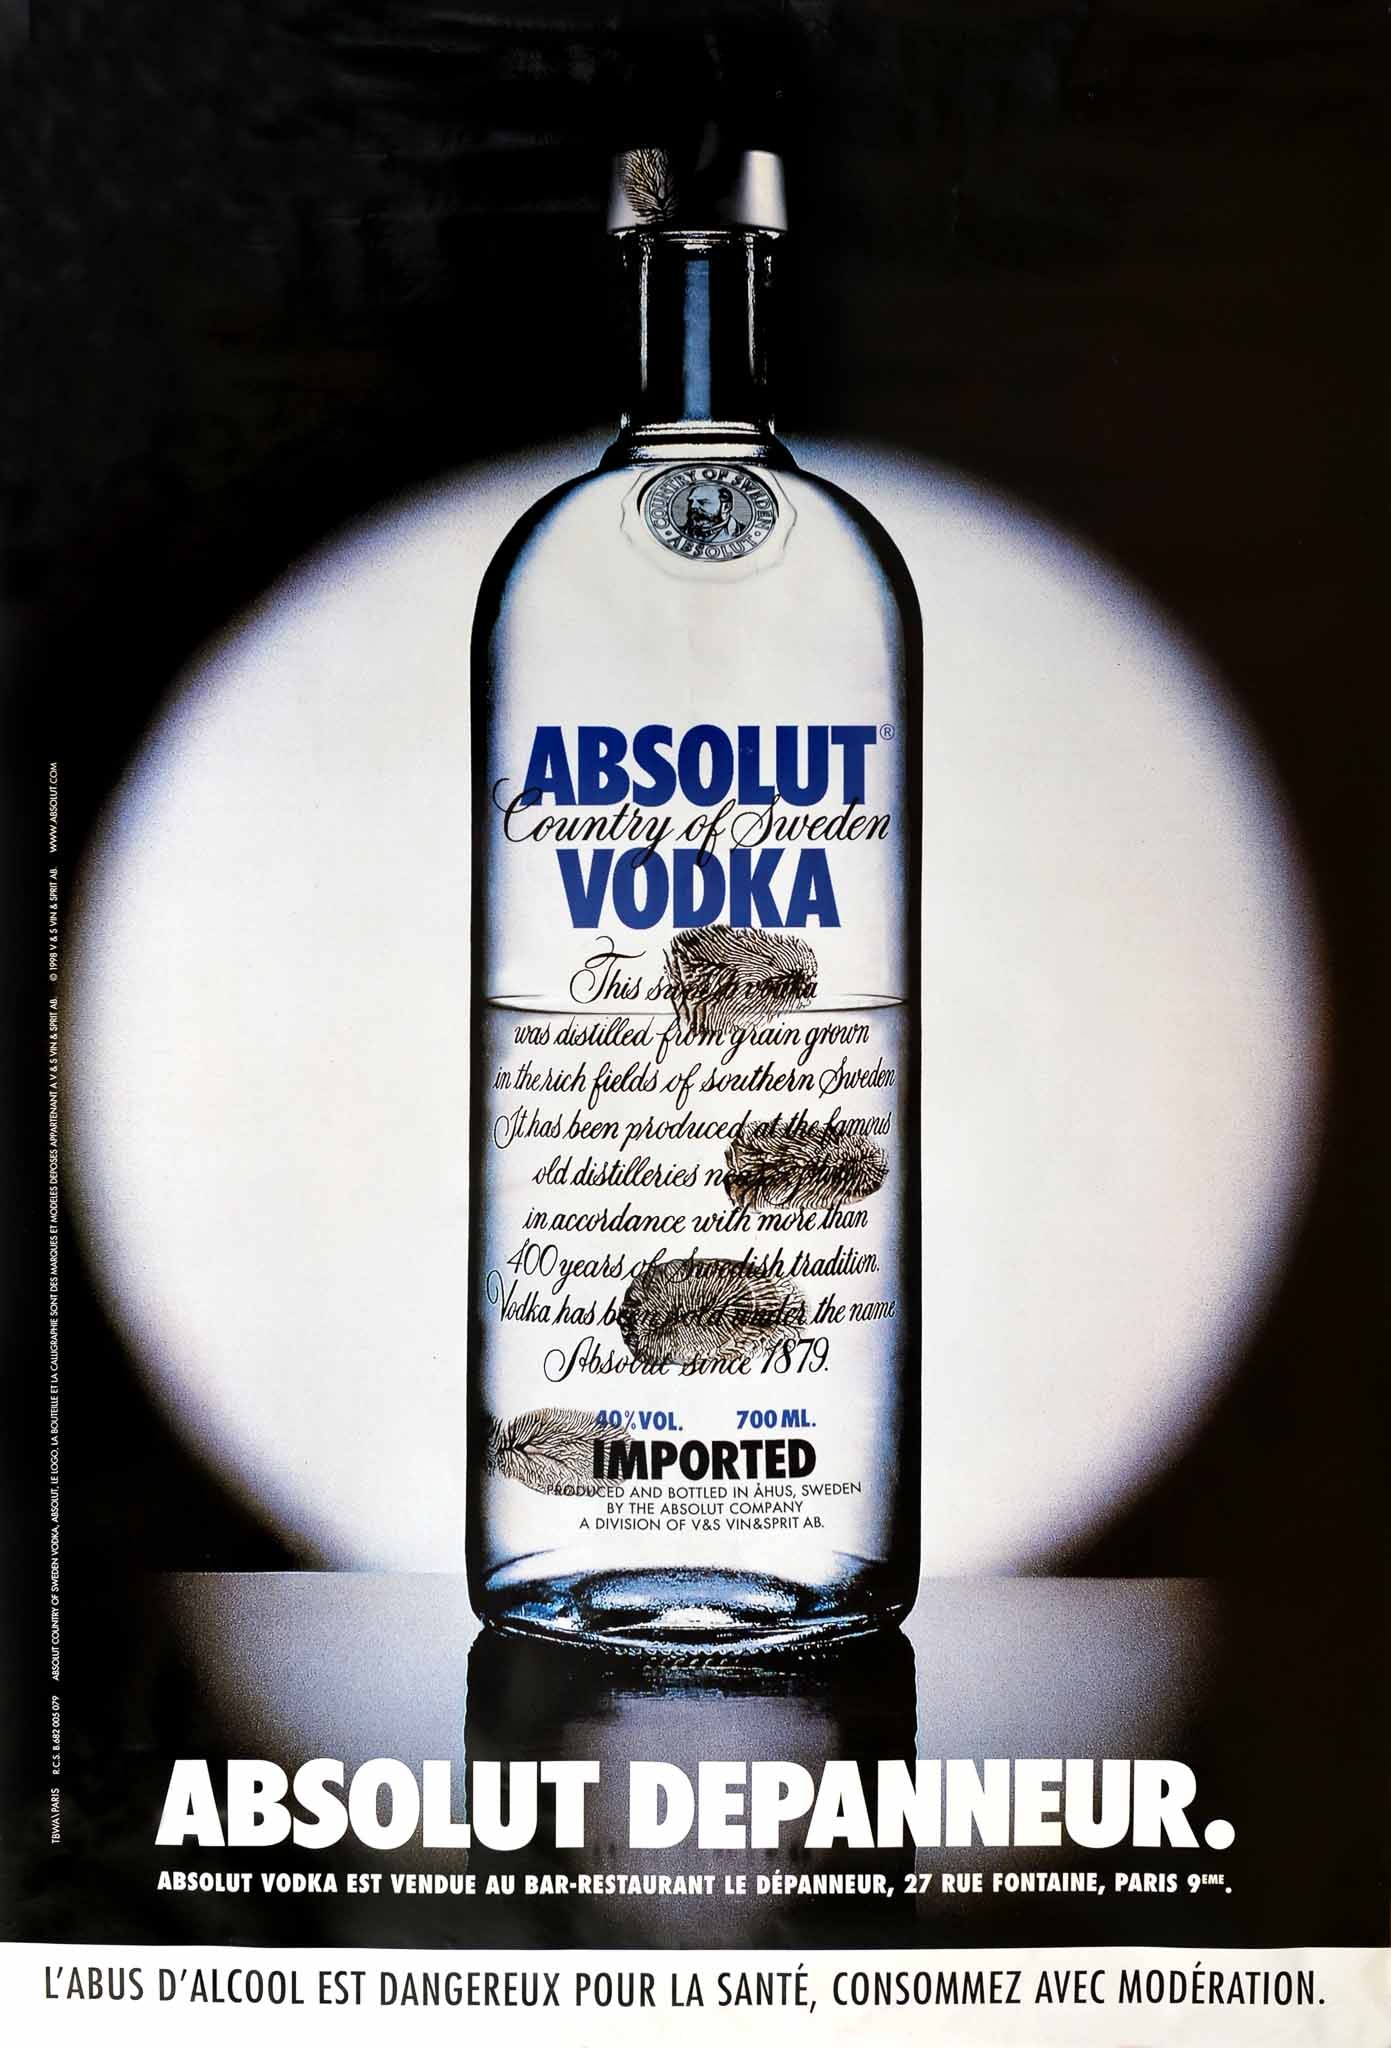 Affiche Absolut Vodka Depanneur, 1998       Rare Affiche Orginale Absolut Depanneur  réalisée par l'agence TBWA,   Grand Format - Trés décoratif   Absolut Vodka Country of Sweden